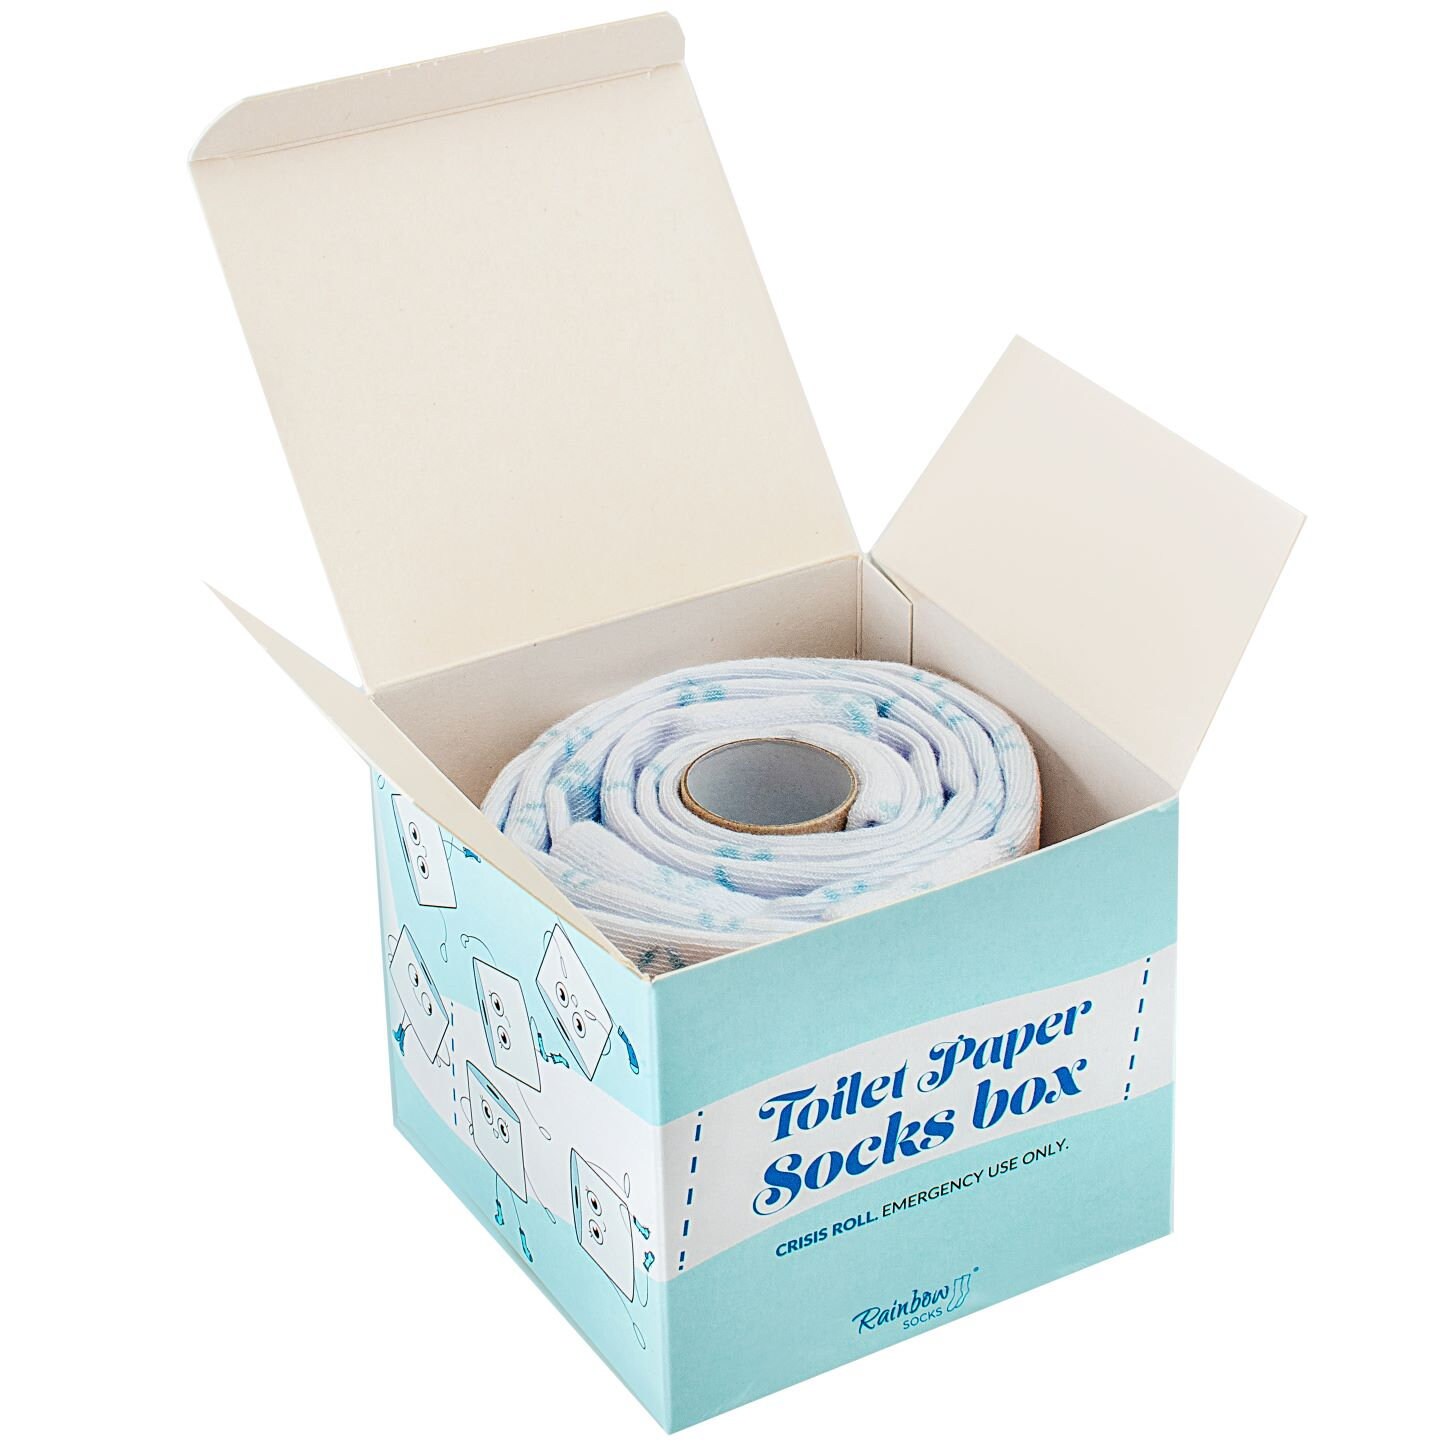 Toilettenpapier-Socken-Box, 2 Paar, Originelle, Einzigartige Socken, Hergestellt in Der Eu, Ideal Als Geschenk, Überraschung Hochwertige Baumwolle von RainbowSockscom